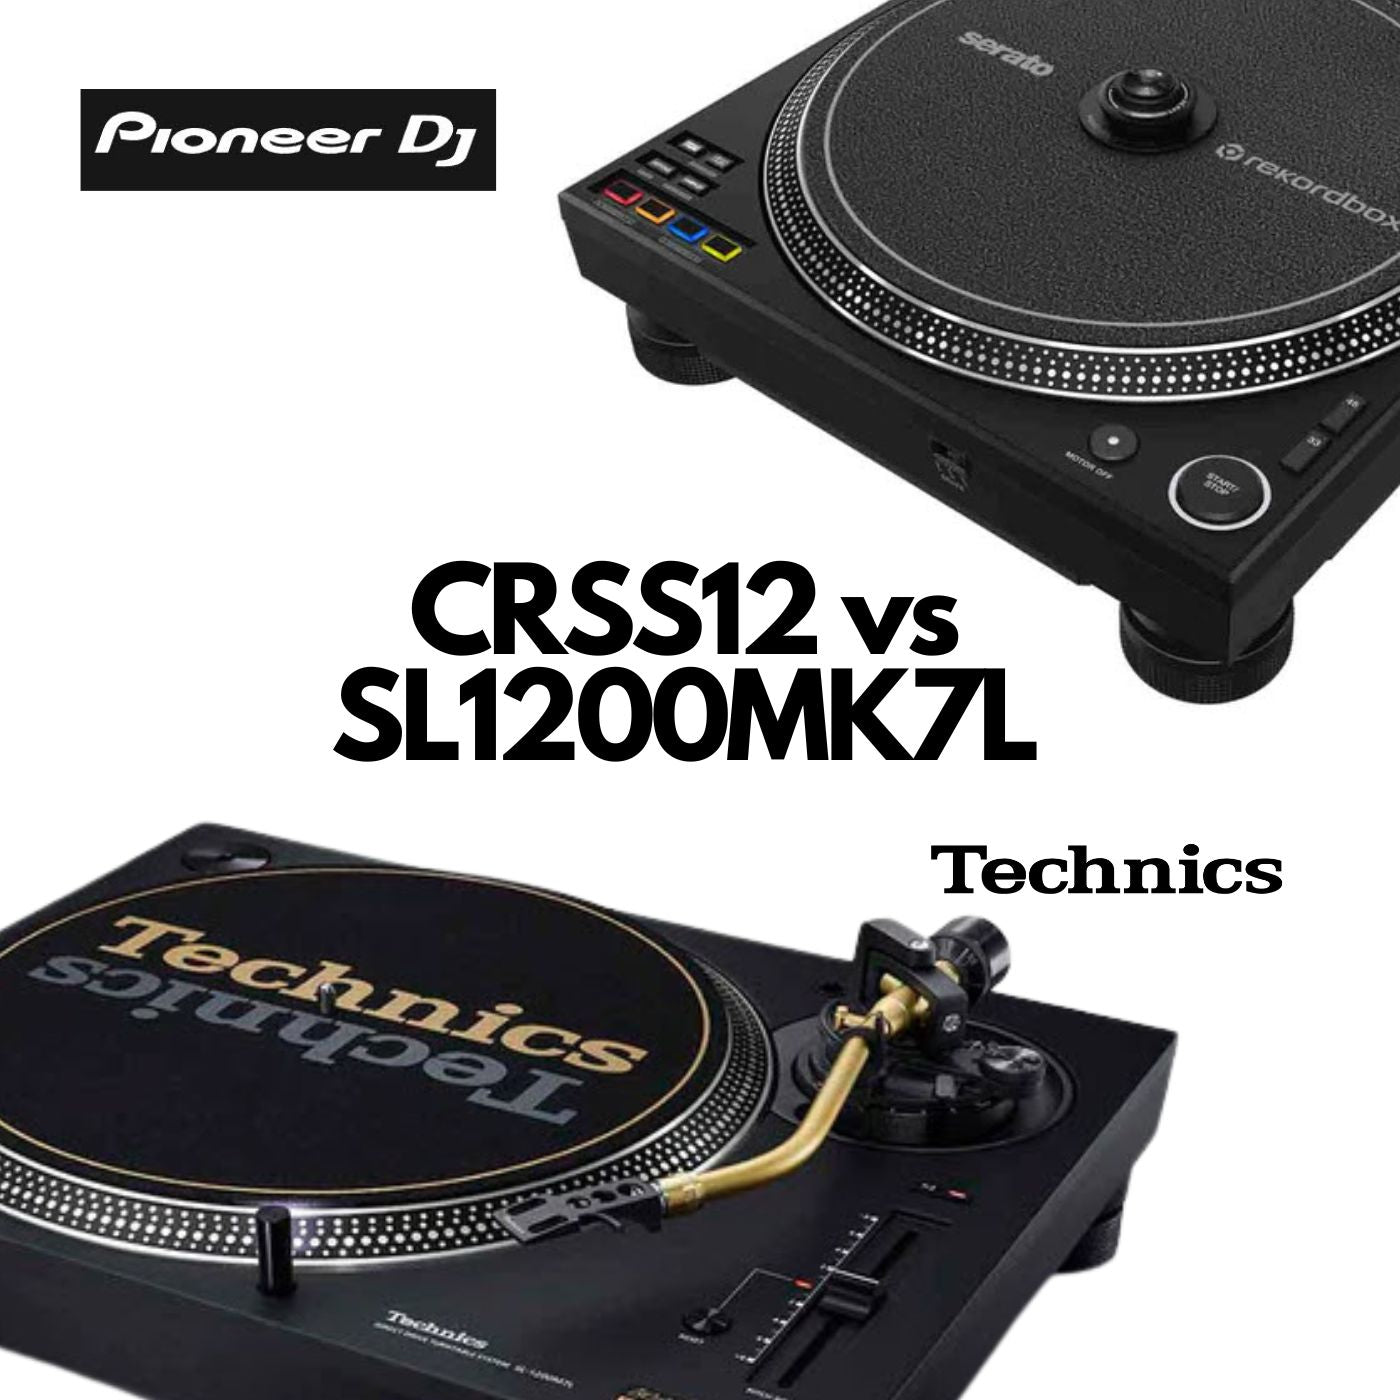 PLX CRSS12 vs Technics SL1200 MK7 Compare and Contrast